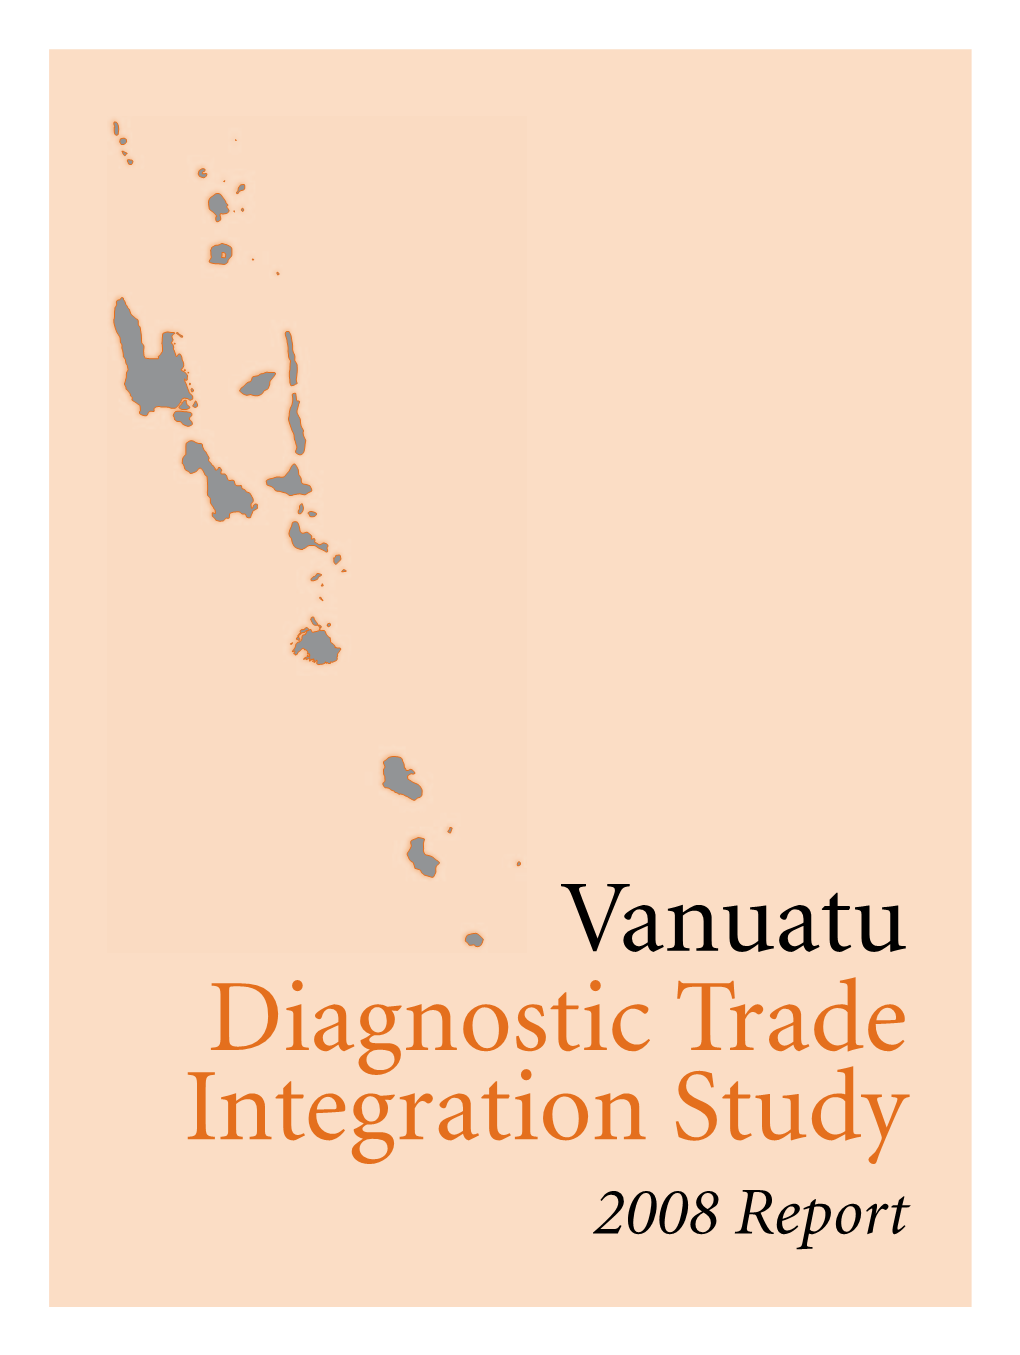 Vanuatu Diagnostic Trade Integration Study 2008 Report